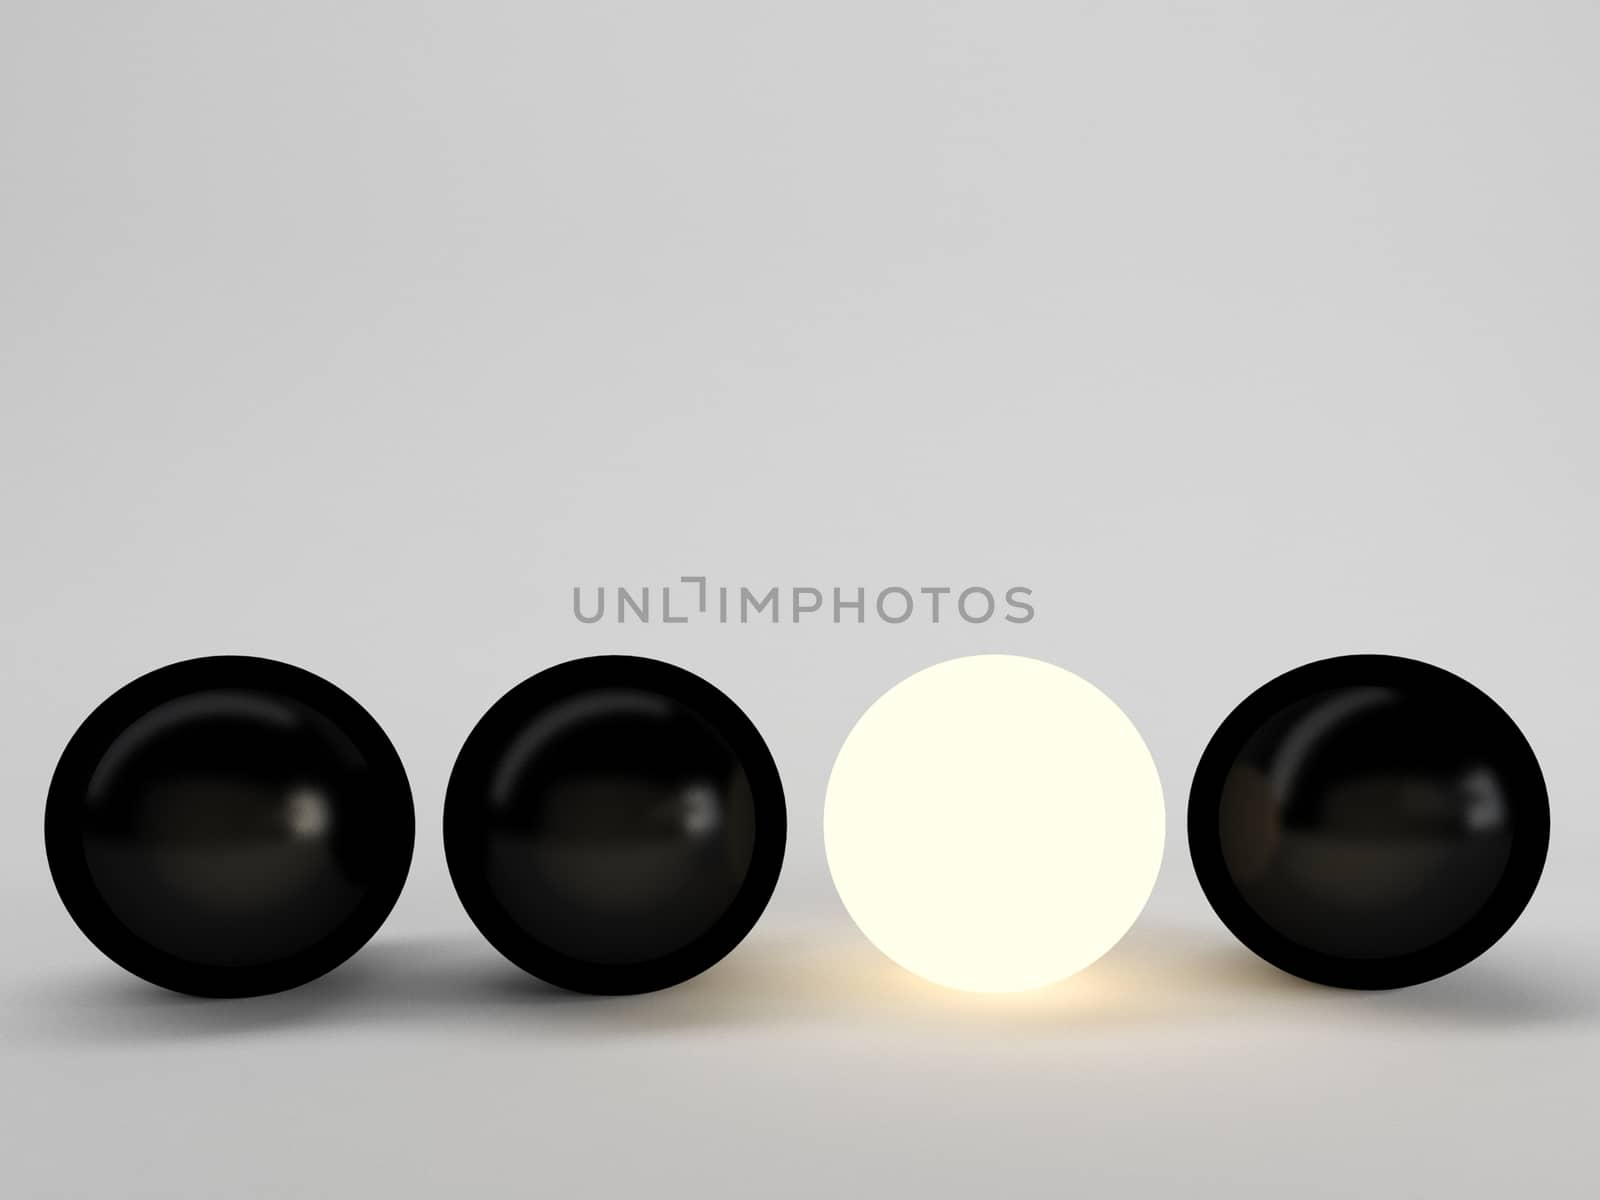 Luminous sphere. Innovation concept. 3d illustration, black against white, dark against light